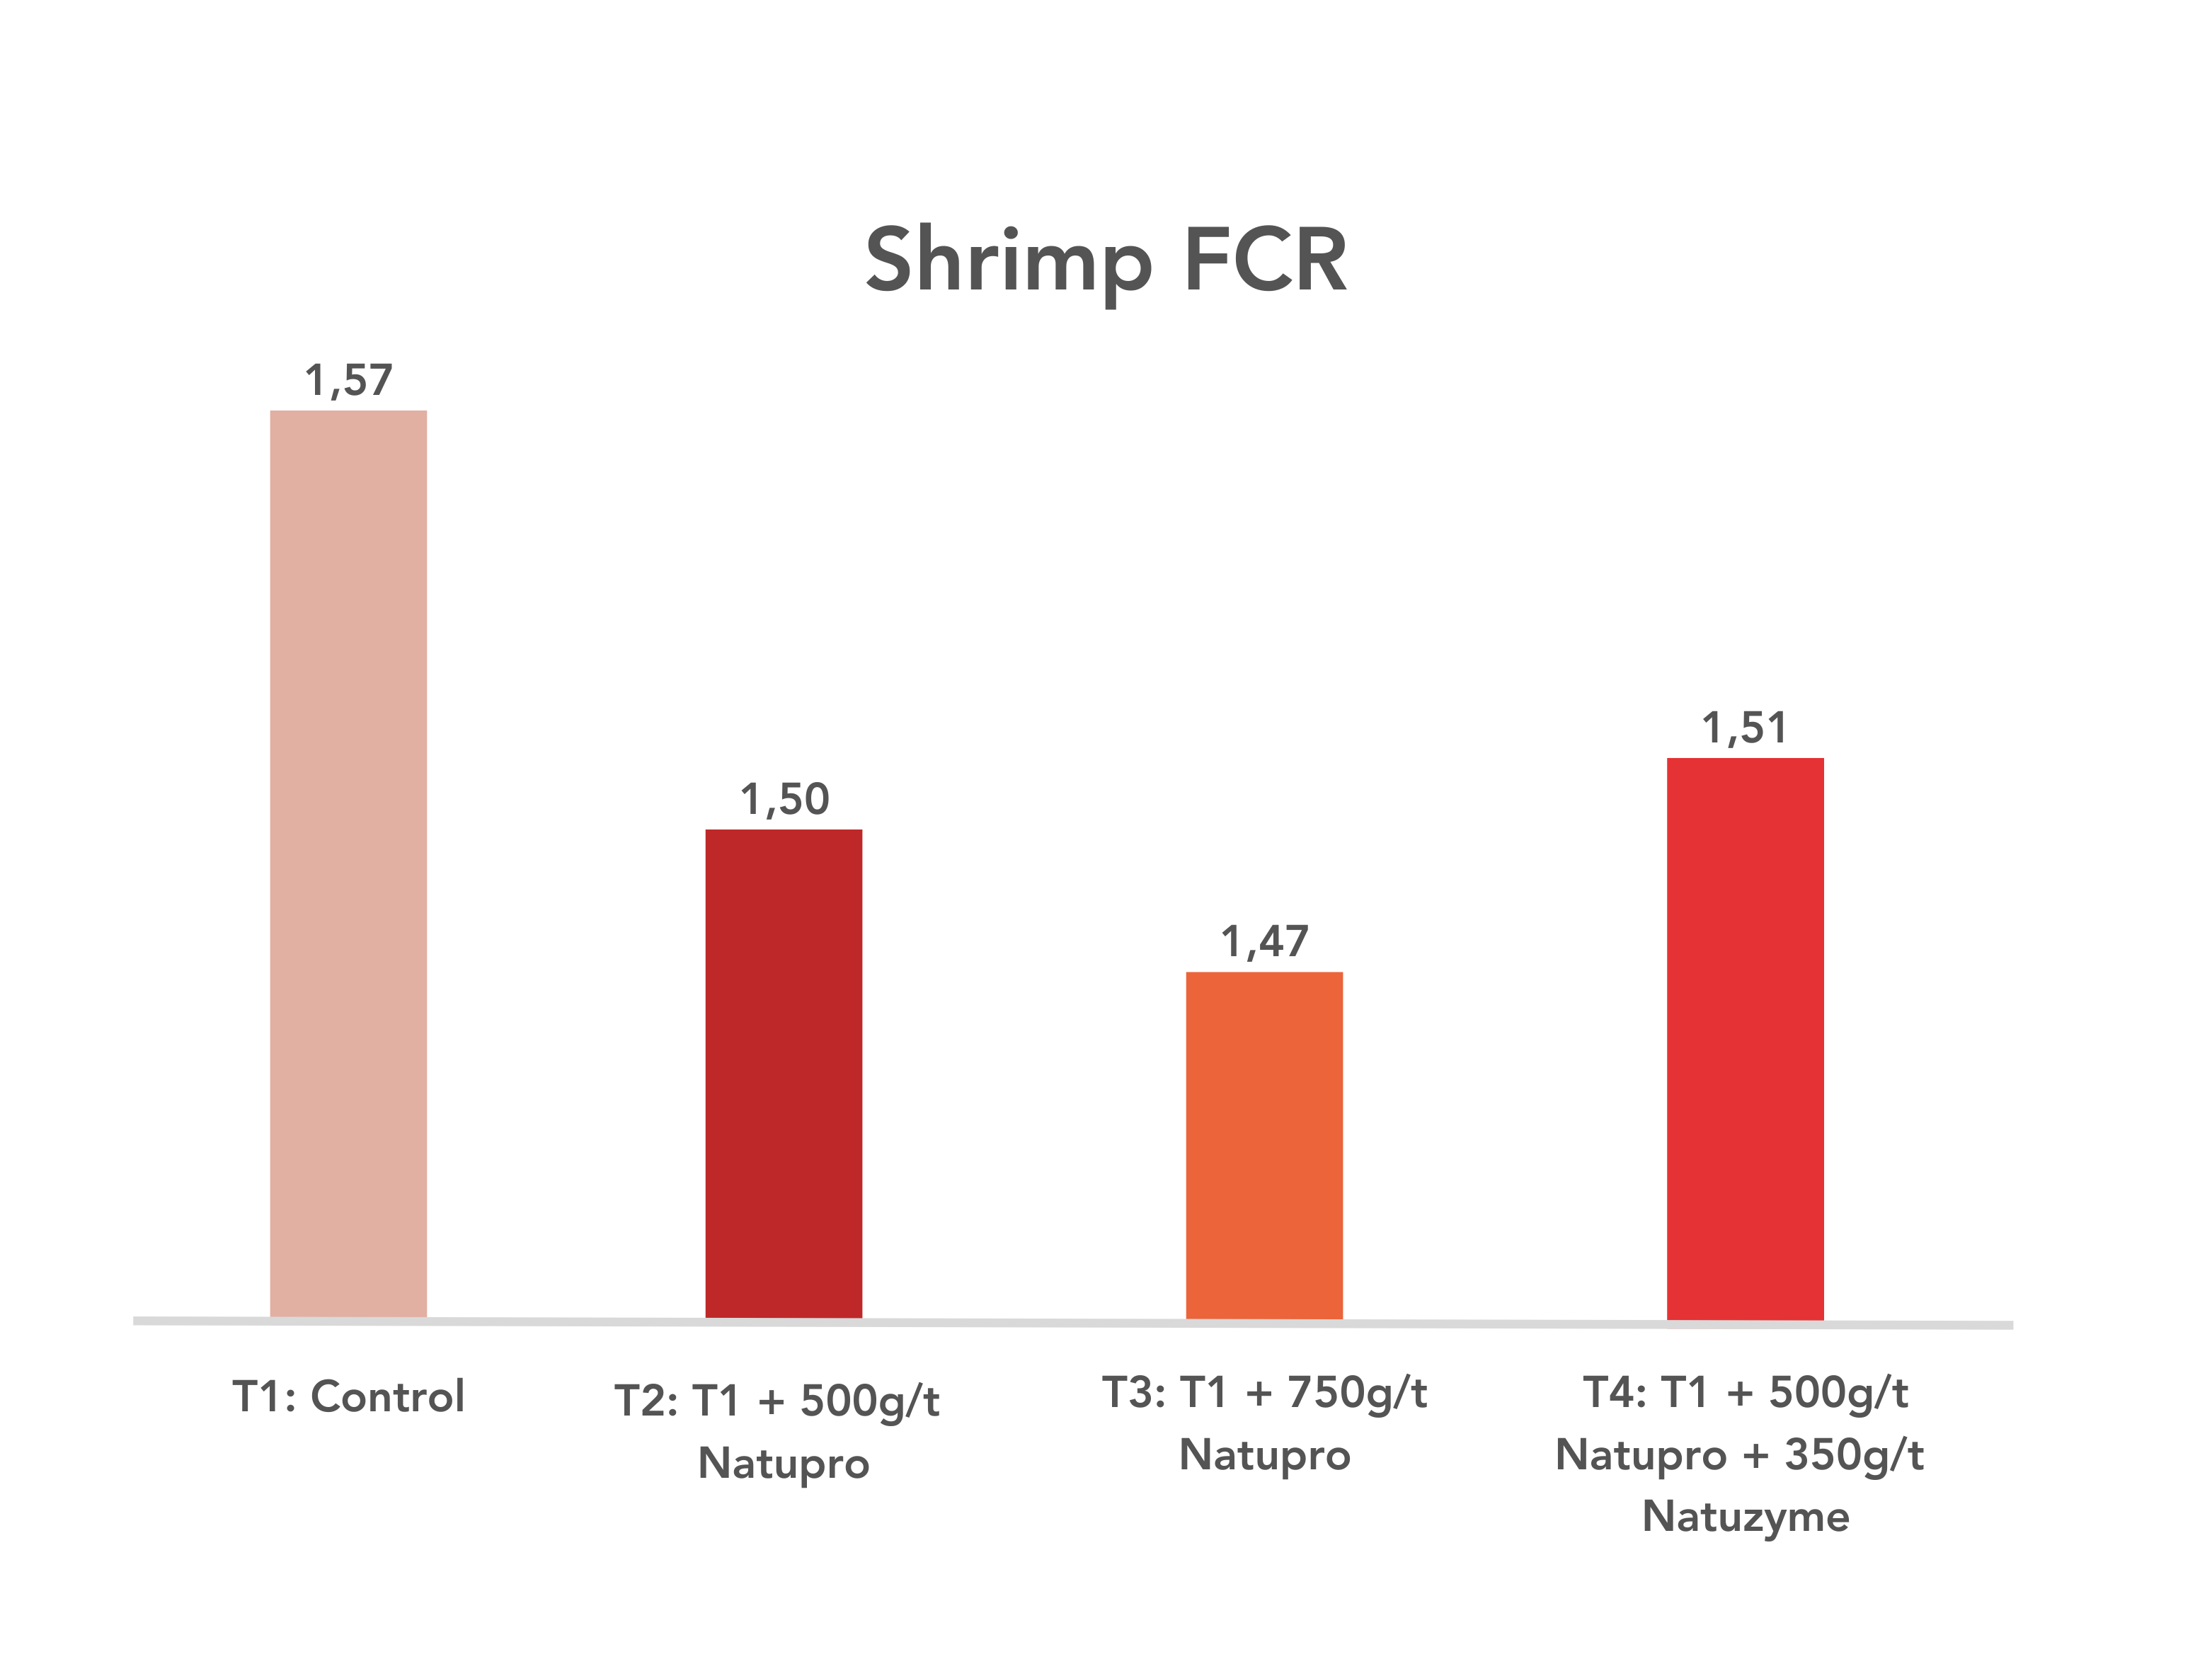 Natupro-Shrimp FCR